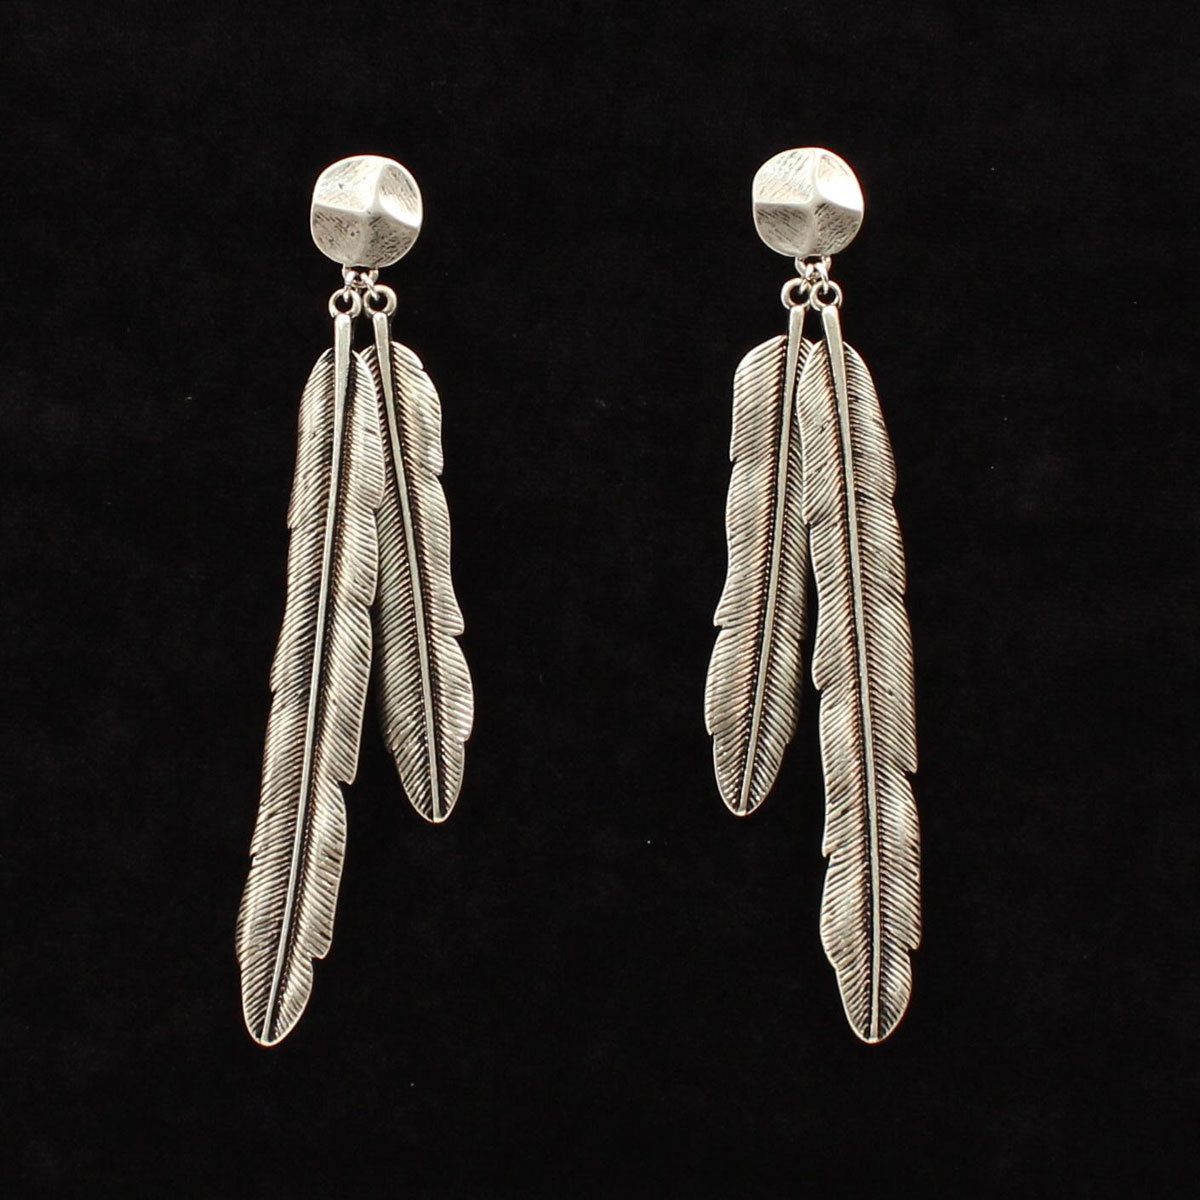 30933 French Hook Style Earrings, Silver